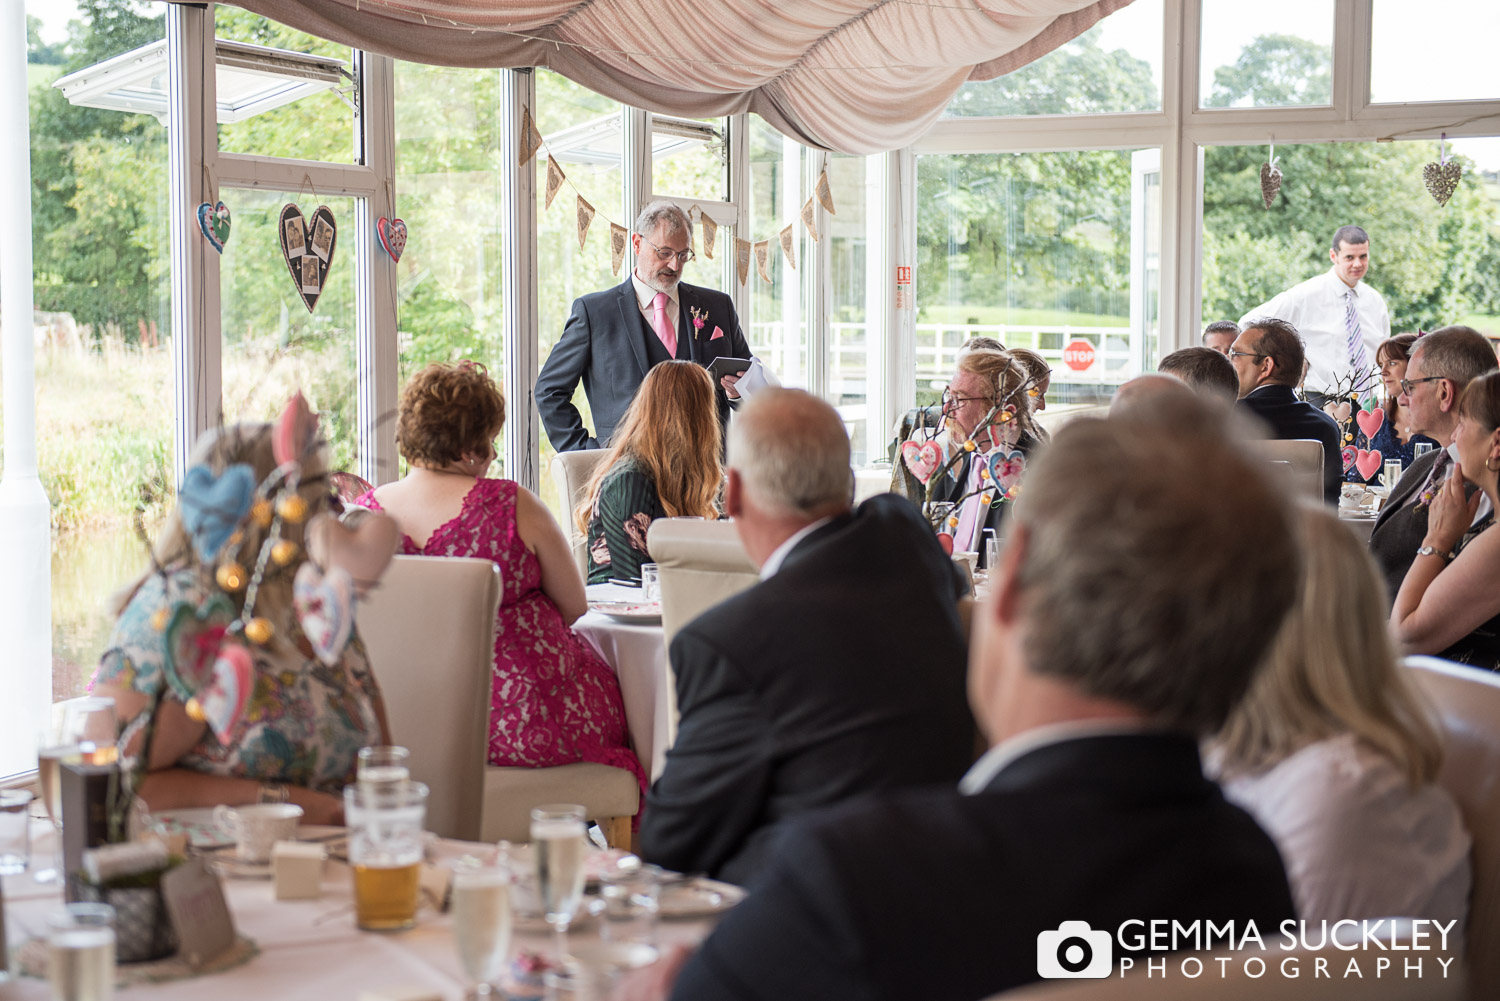 wedding-speeches-skipton©gemmasuckleyphotography.JPG